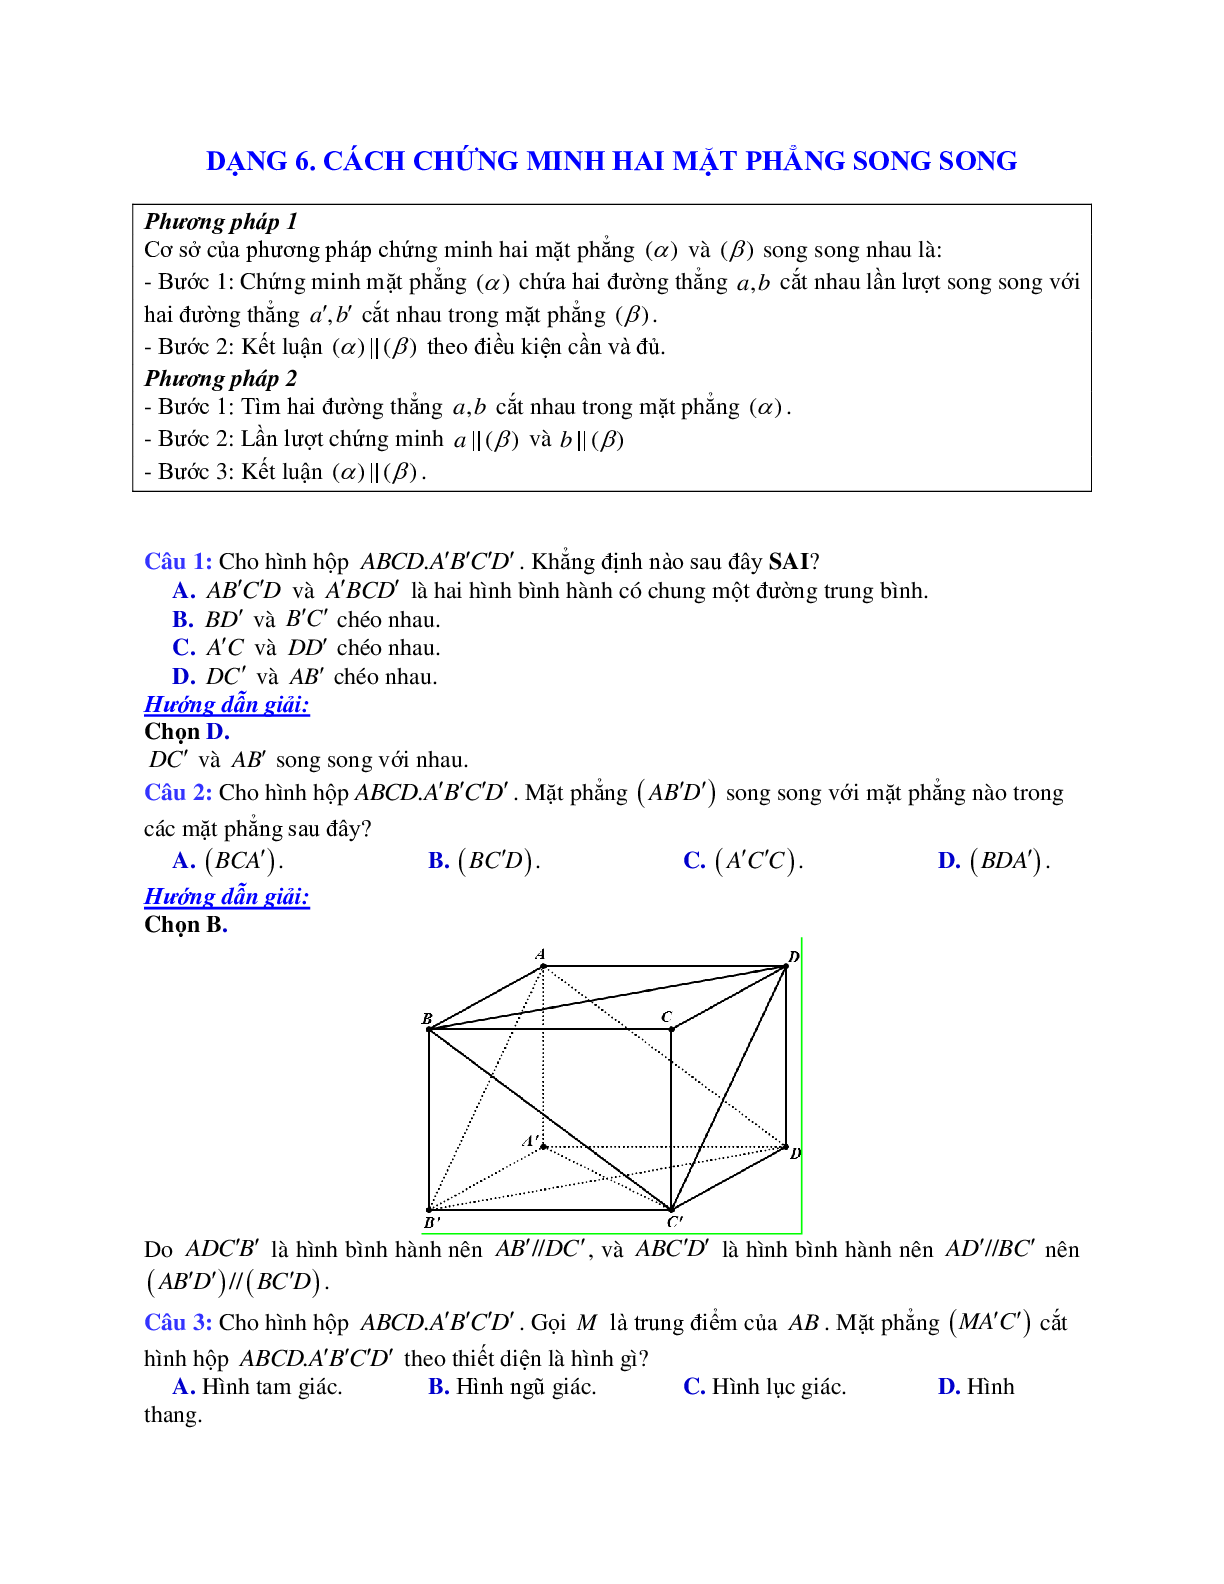 Phương pháp giải và bài tập về Cách chứng minh hai mặt phẳng song song (trang 1)